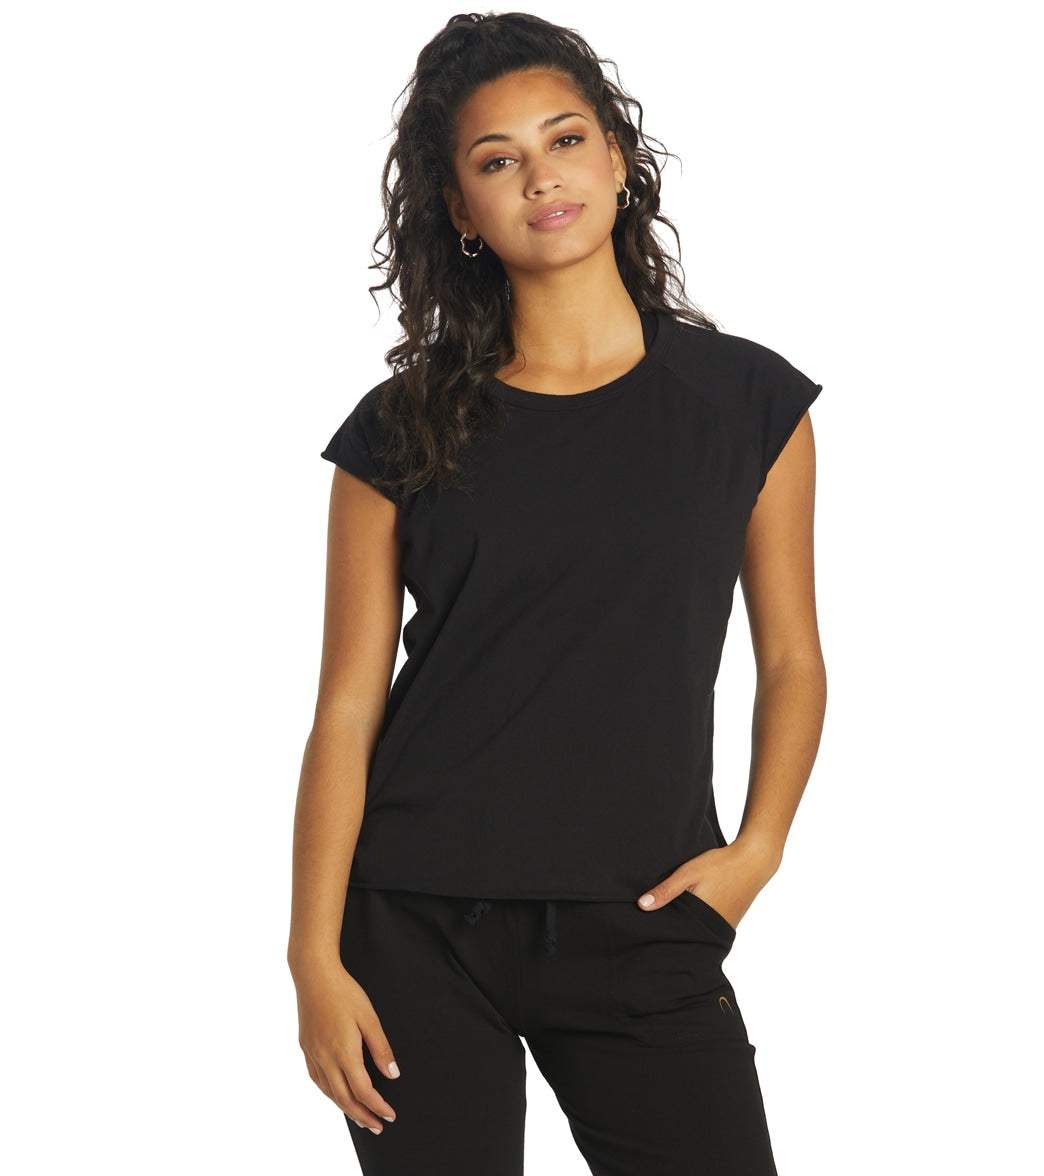 Hyde Tam Tee Shirt - Black M/Lg Size Large Cotton - Swimoutlet.com